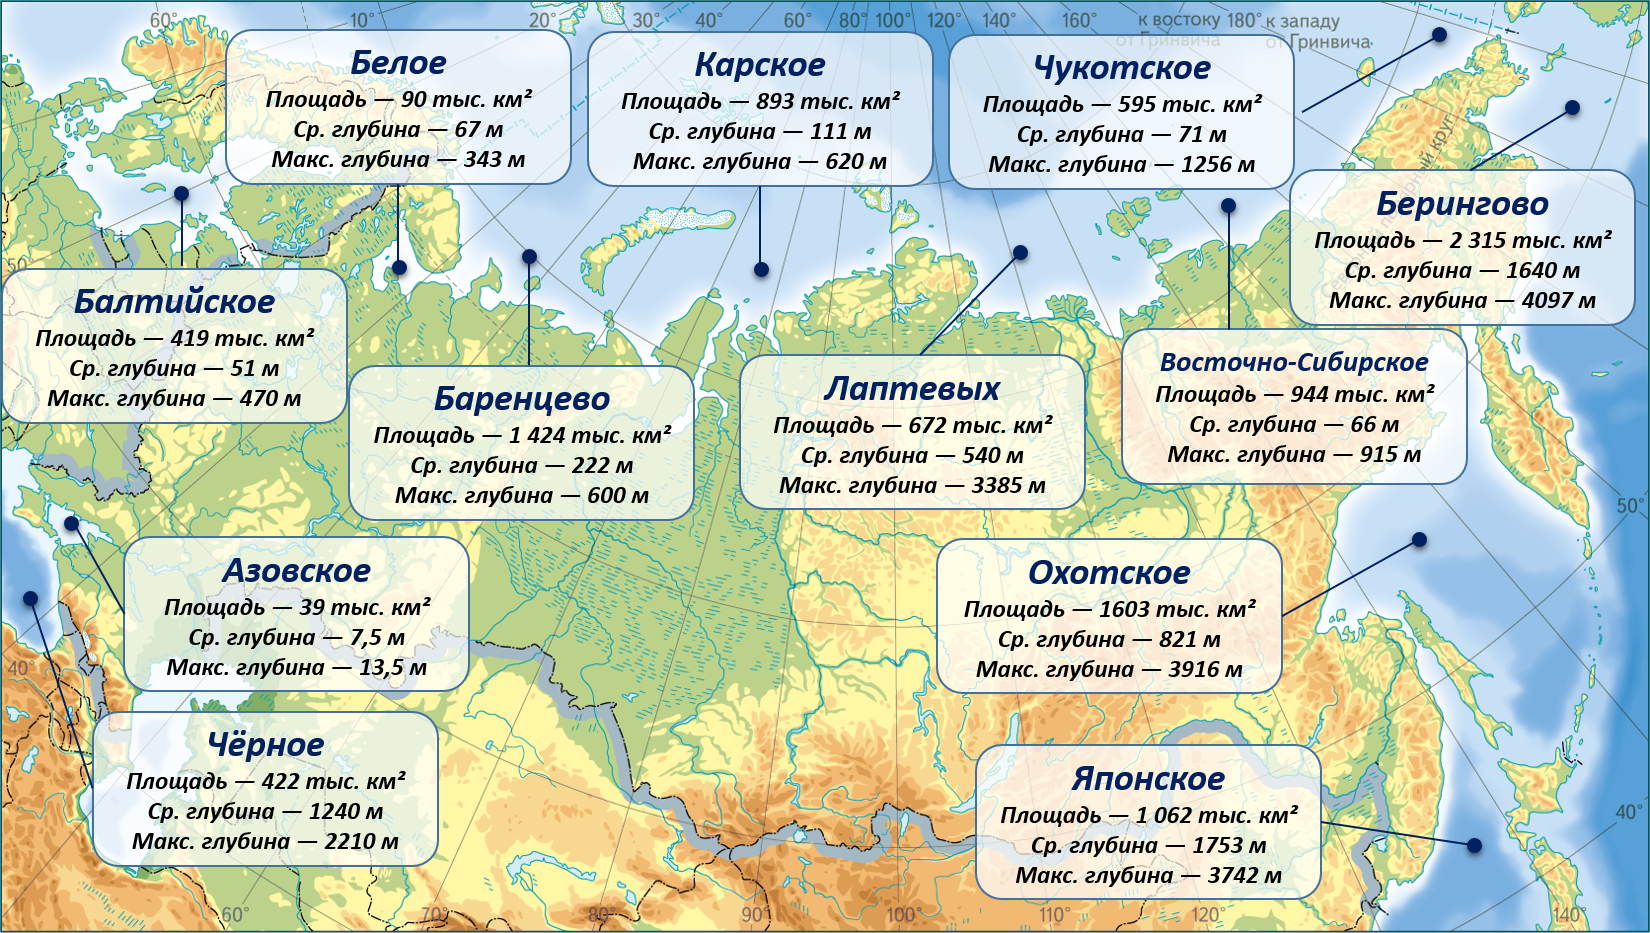 Моря омывающие Россию 8 класс география. Моря омывающие Россию на карте. Моря России на карте. Карта российских морей.